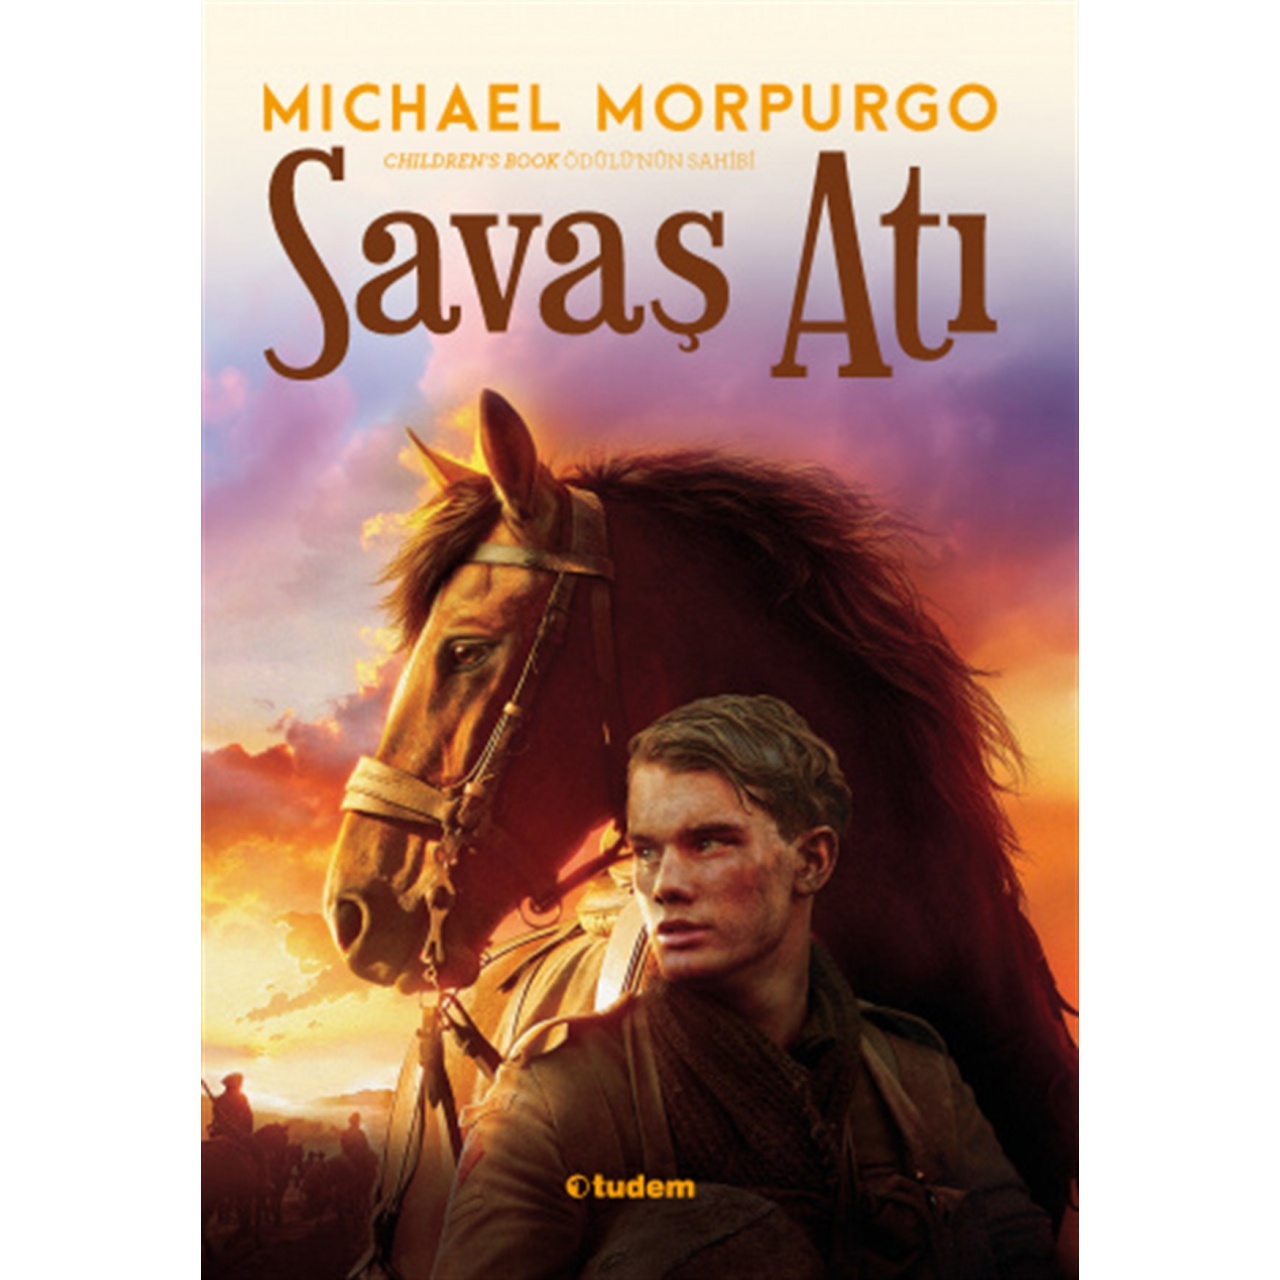 Michael Morpurgo Savaş Atı